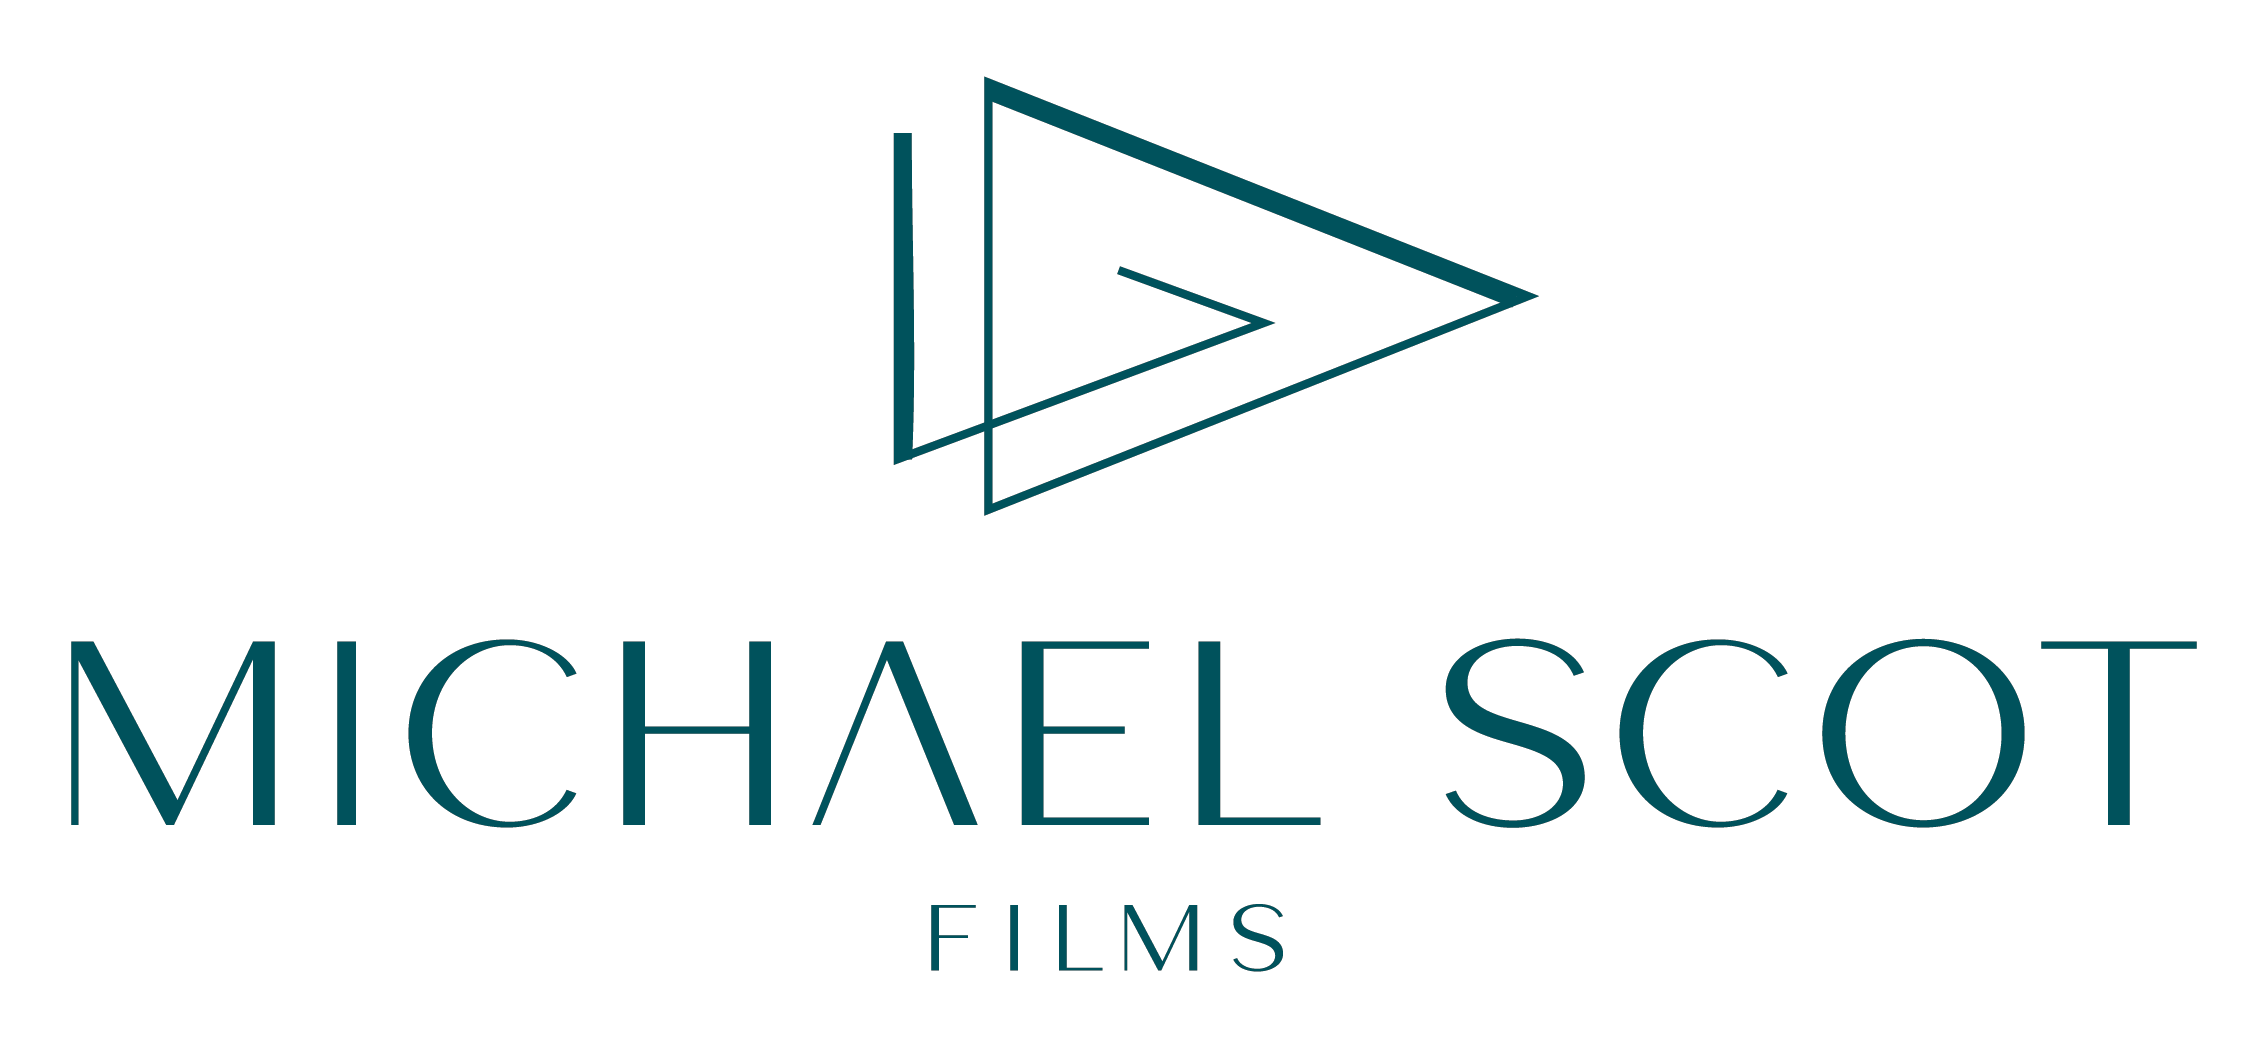 Michael Scot Films Dark Teal Logo